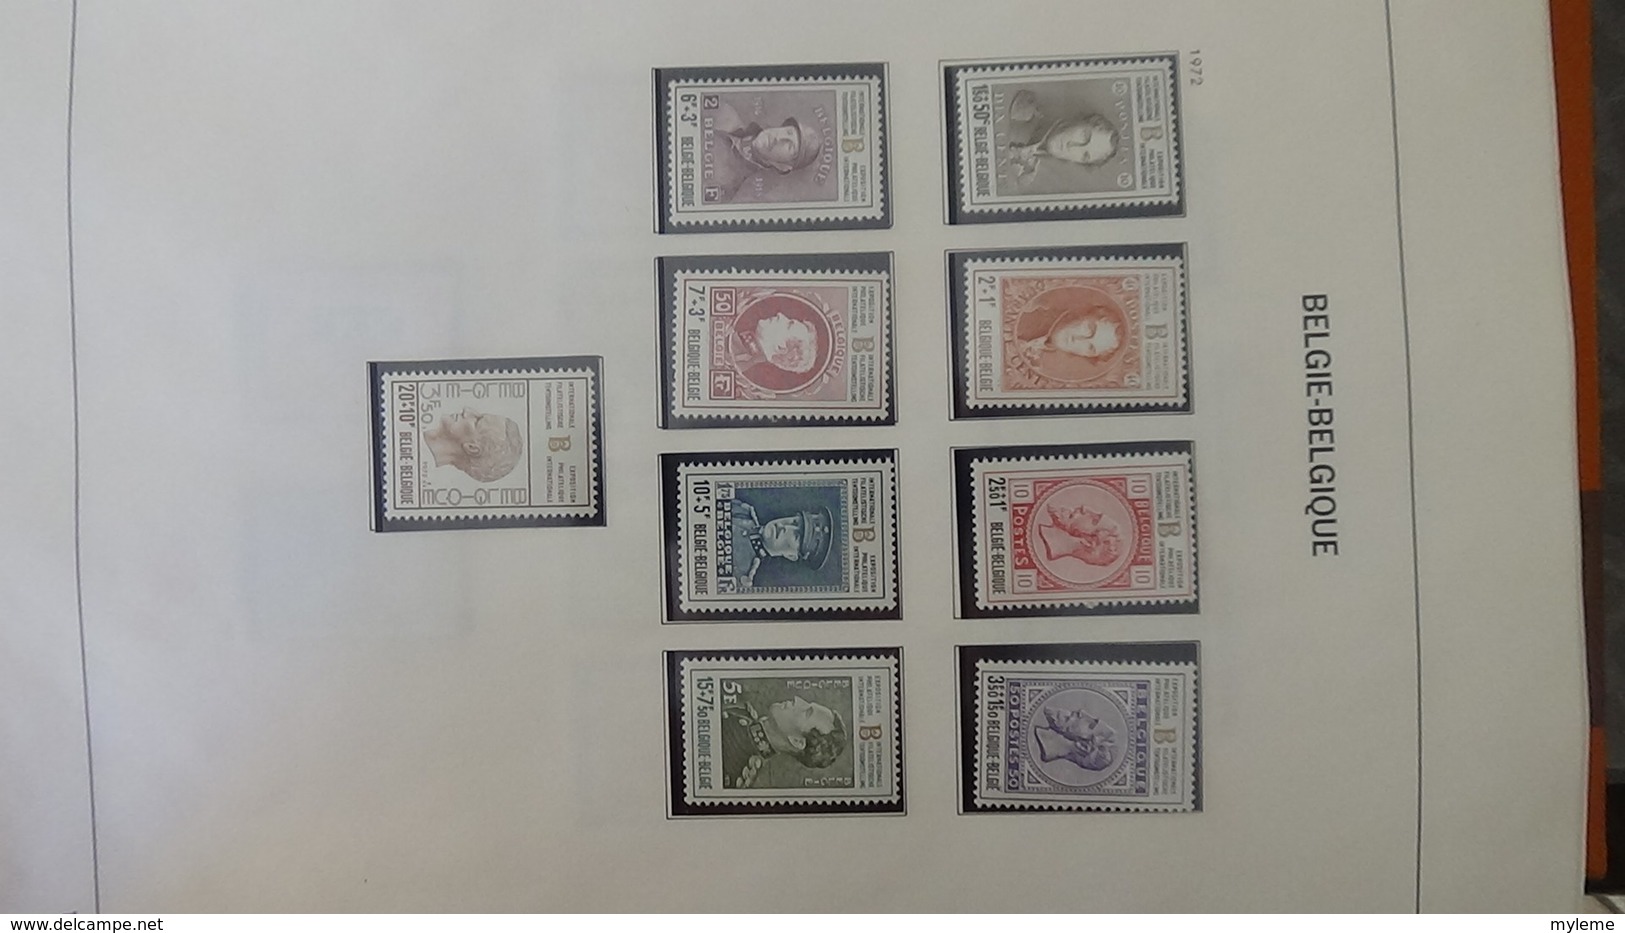 Grosse collection BELGIQUE en DAVO de 1971 à 1984 en blocs, carnets et timbres ** . Bien suivie A saisir !!!